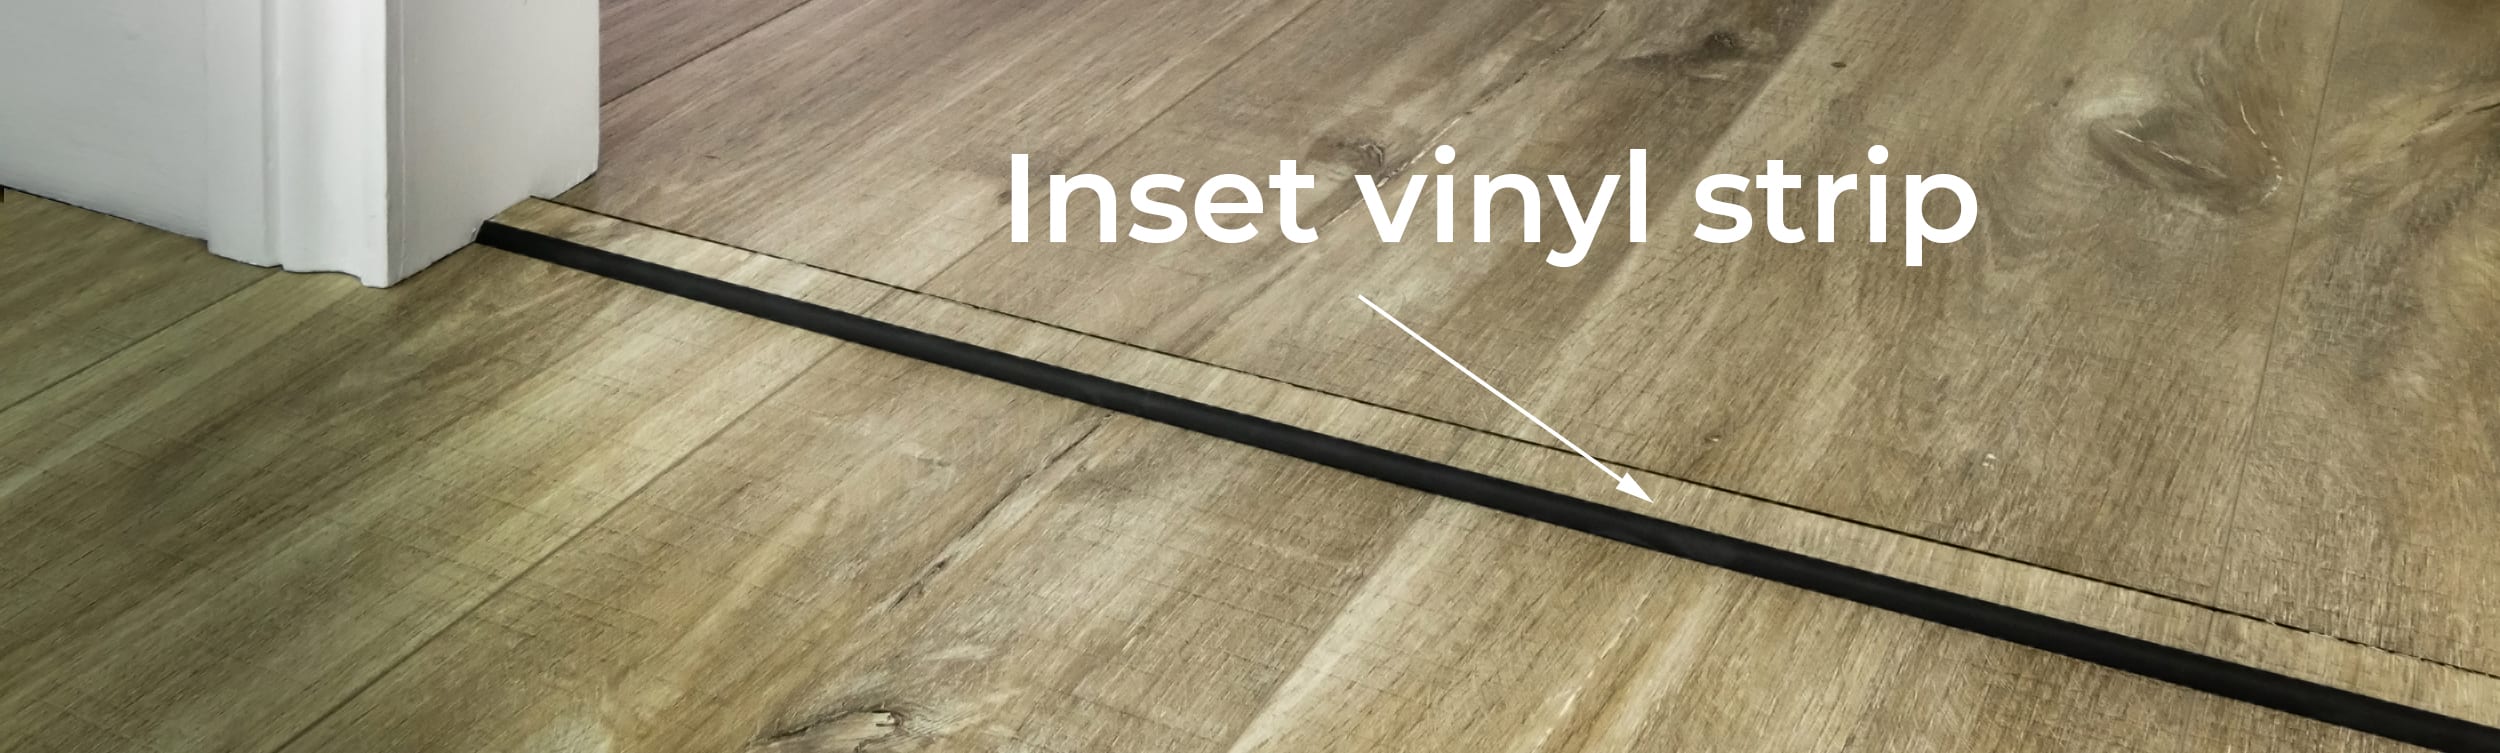 Transition Strips for Vinyl Flooring, Door Thresholds for LVT | Great Choice